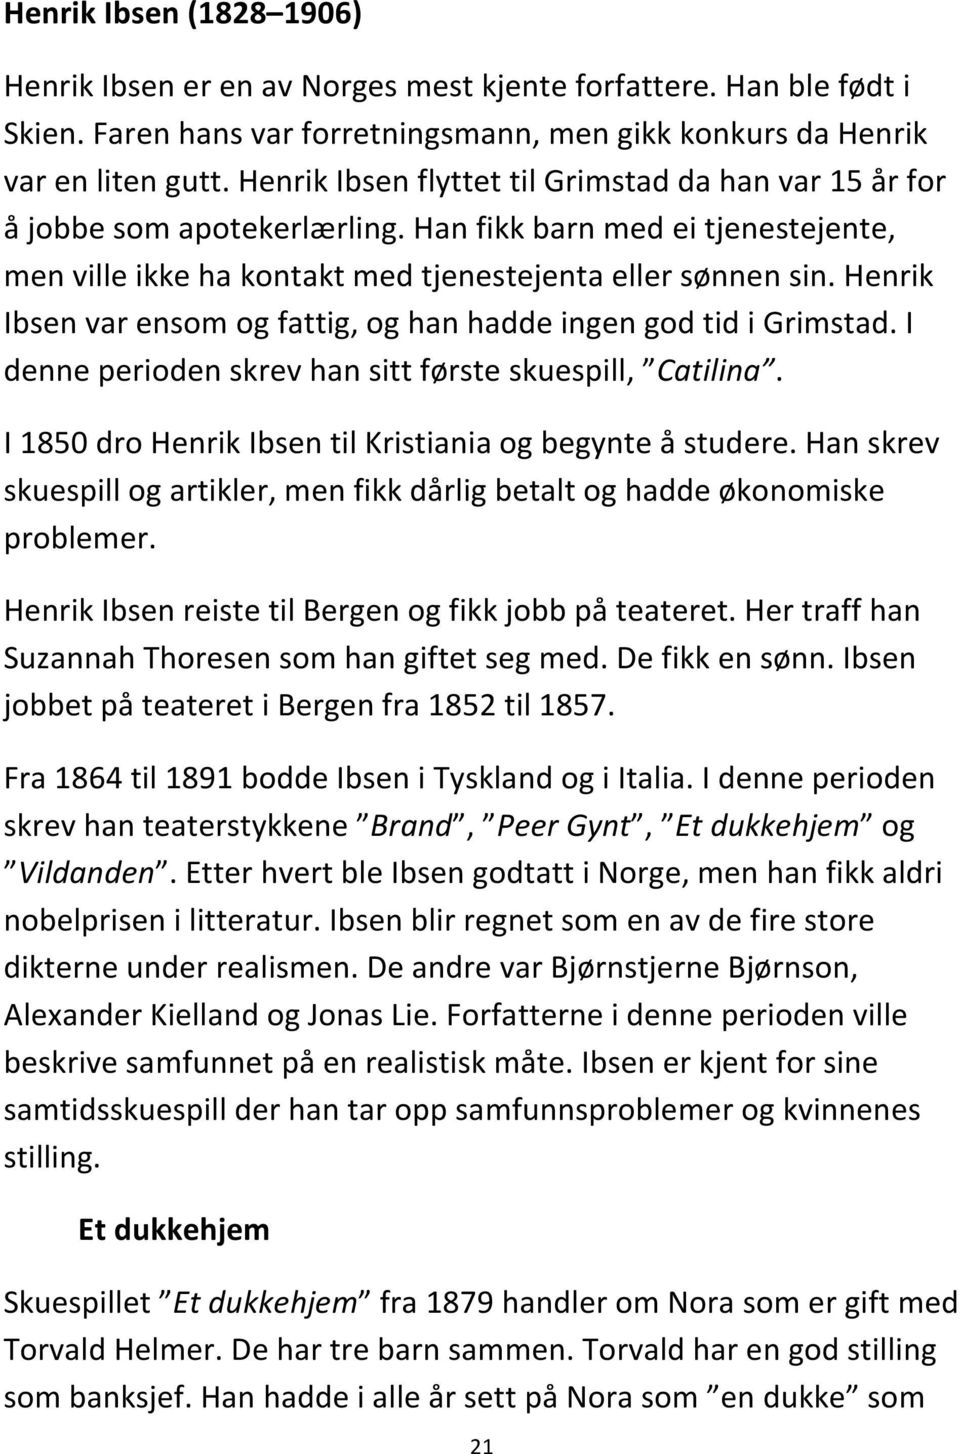 Henrik Ibsen var ensom og fattig, og han hadde ingen god tid i Grimstad. I denne perioden skrev han sitt første skuespill, Catilina. I 1850 dro Henrik Ibsen til Kristiania og begynte å studere.